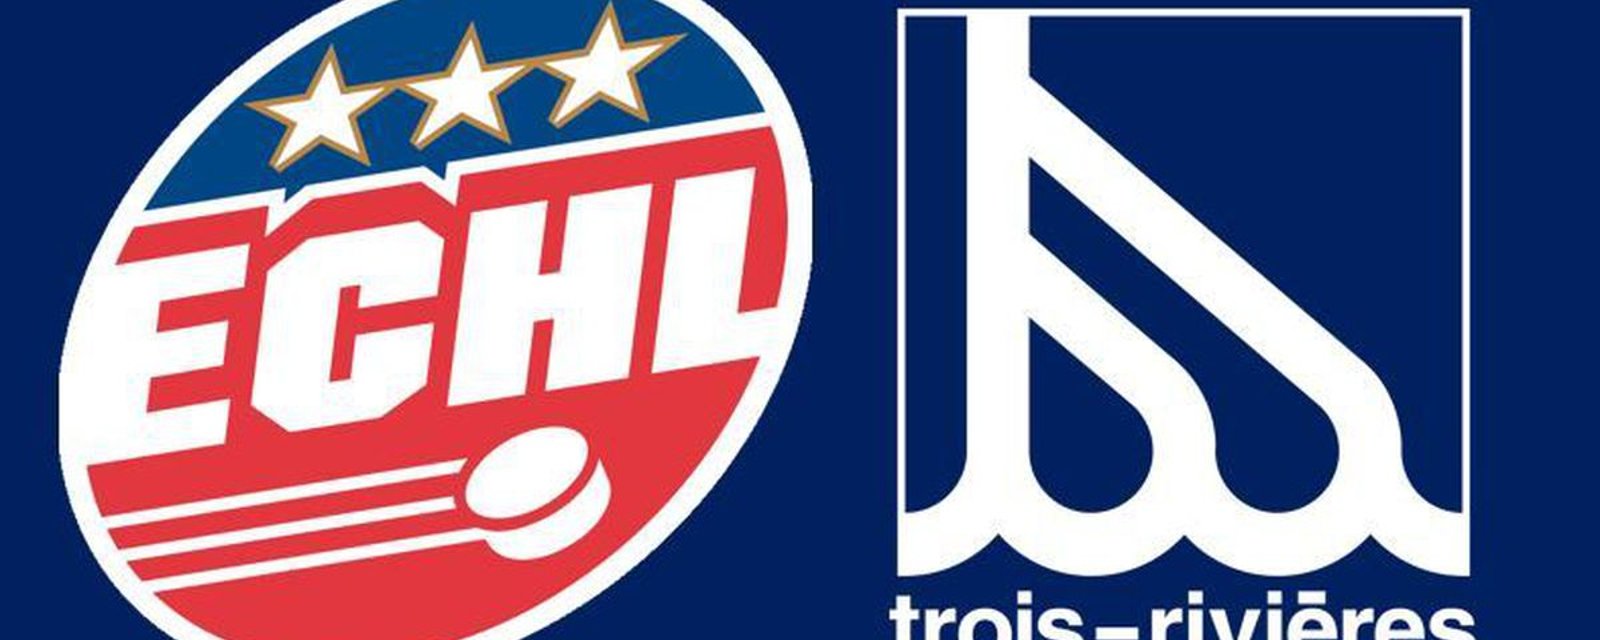 Une équipe ECHL affiliée au Canadien à Trois-Rivières? De nouveaux indices font surface!